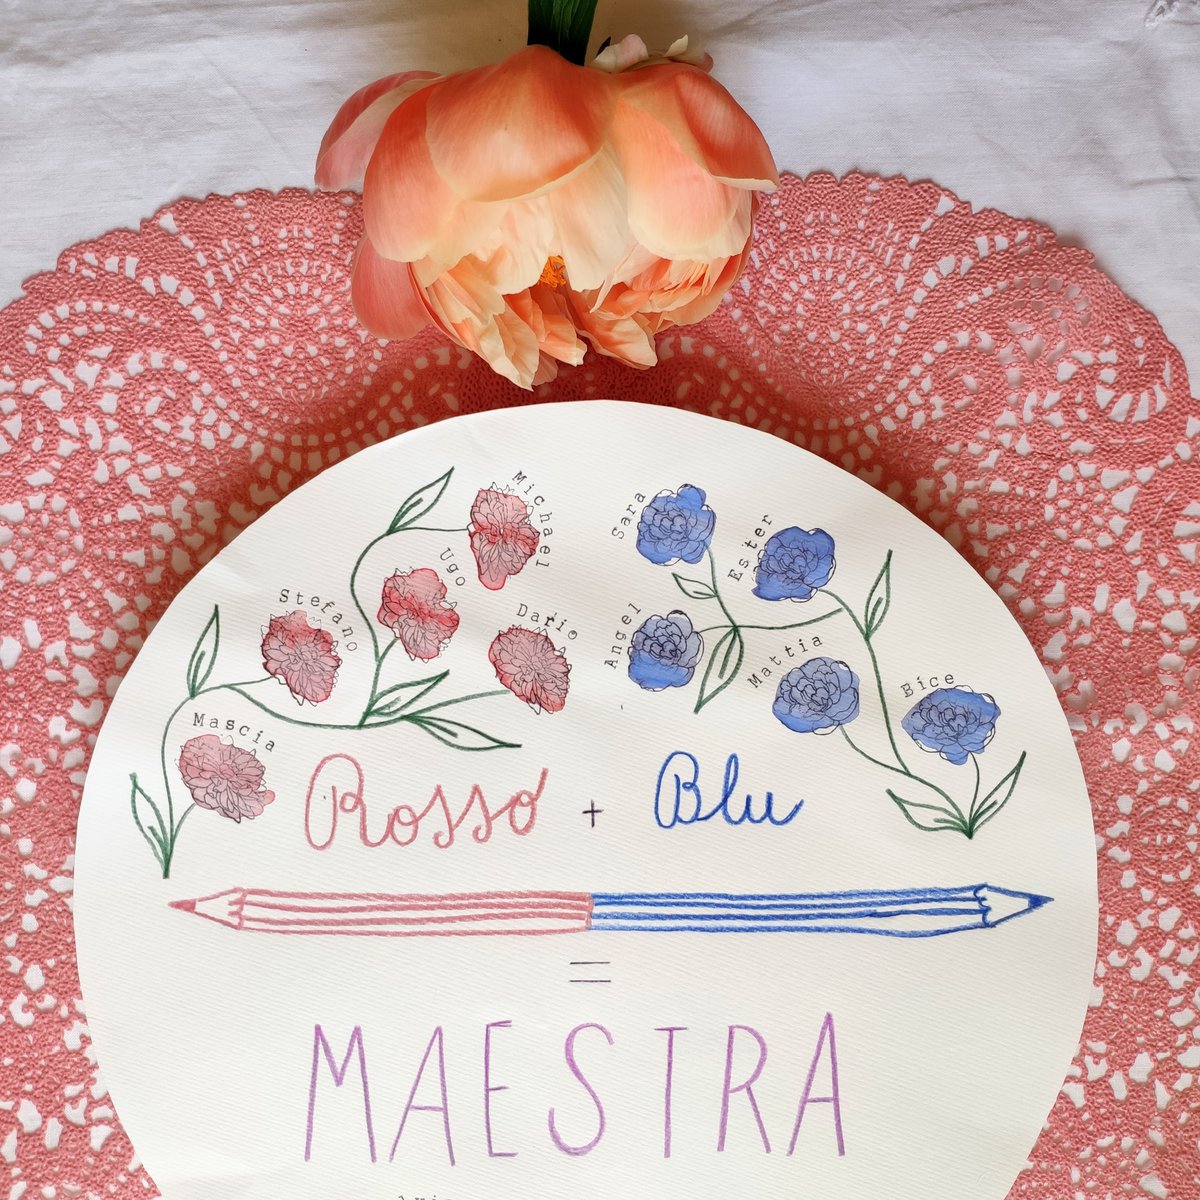 PIATTO MAESTRA - ROSSO + BLU = MAESTRA